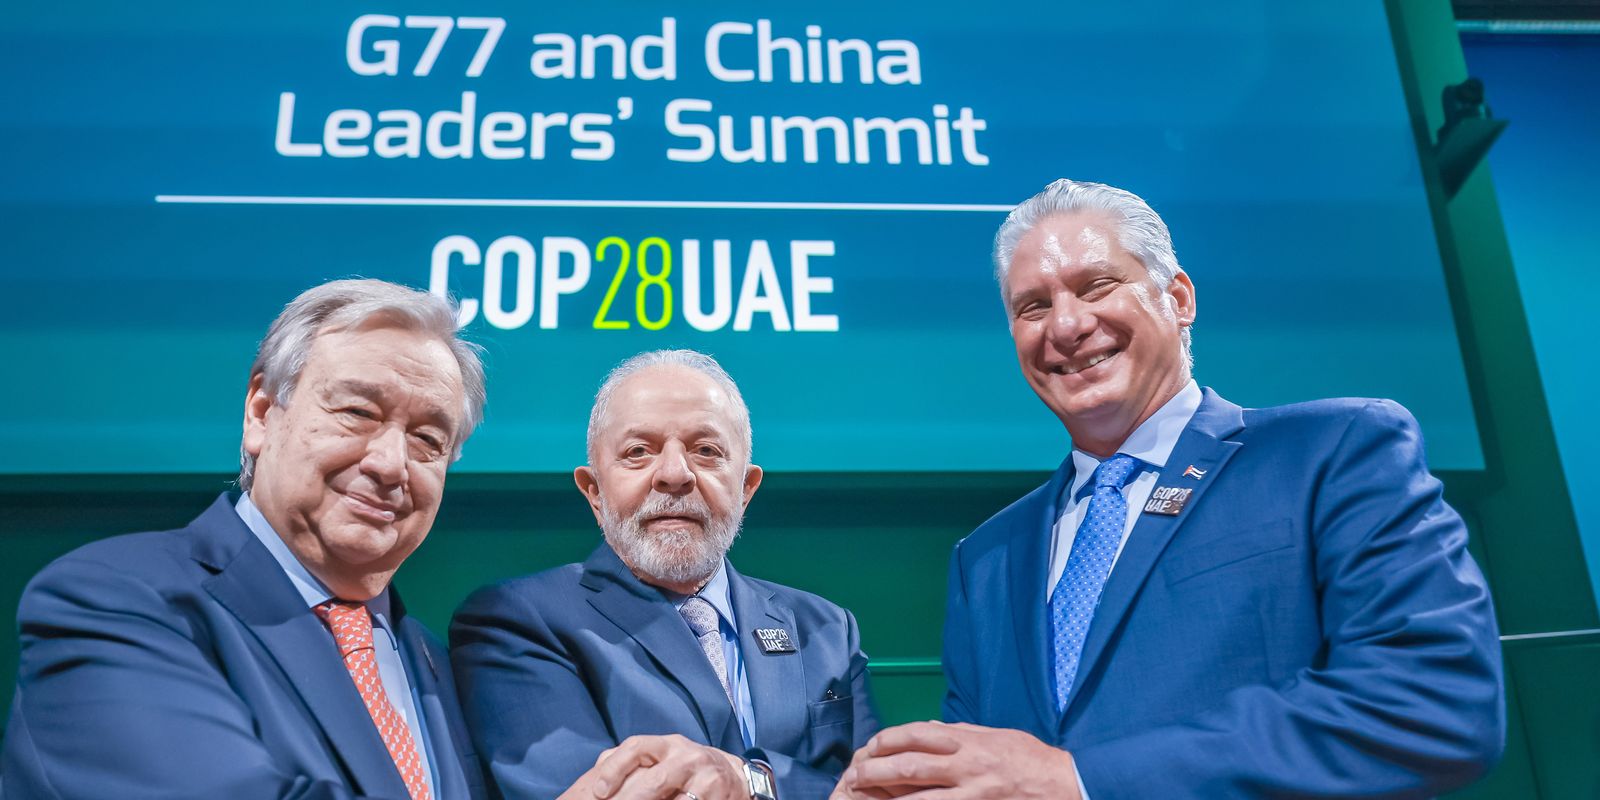 Lula: Financiamento climático não pode reproduzir modelo do FMI